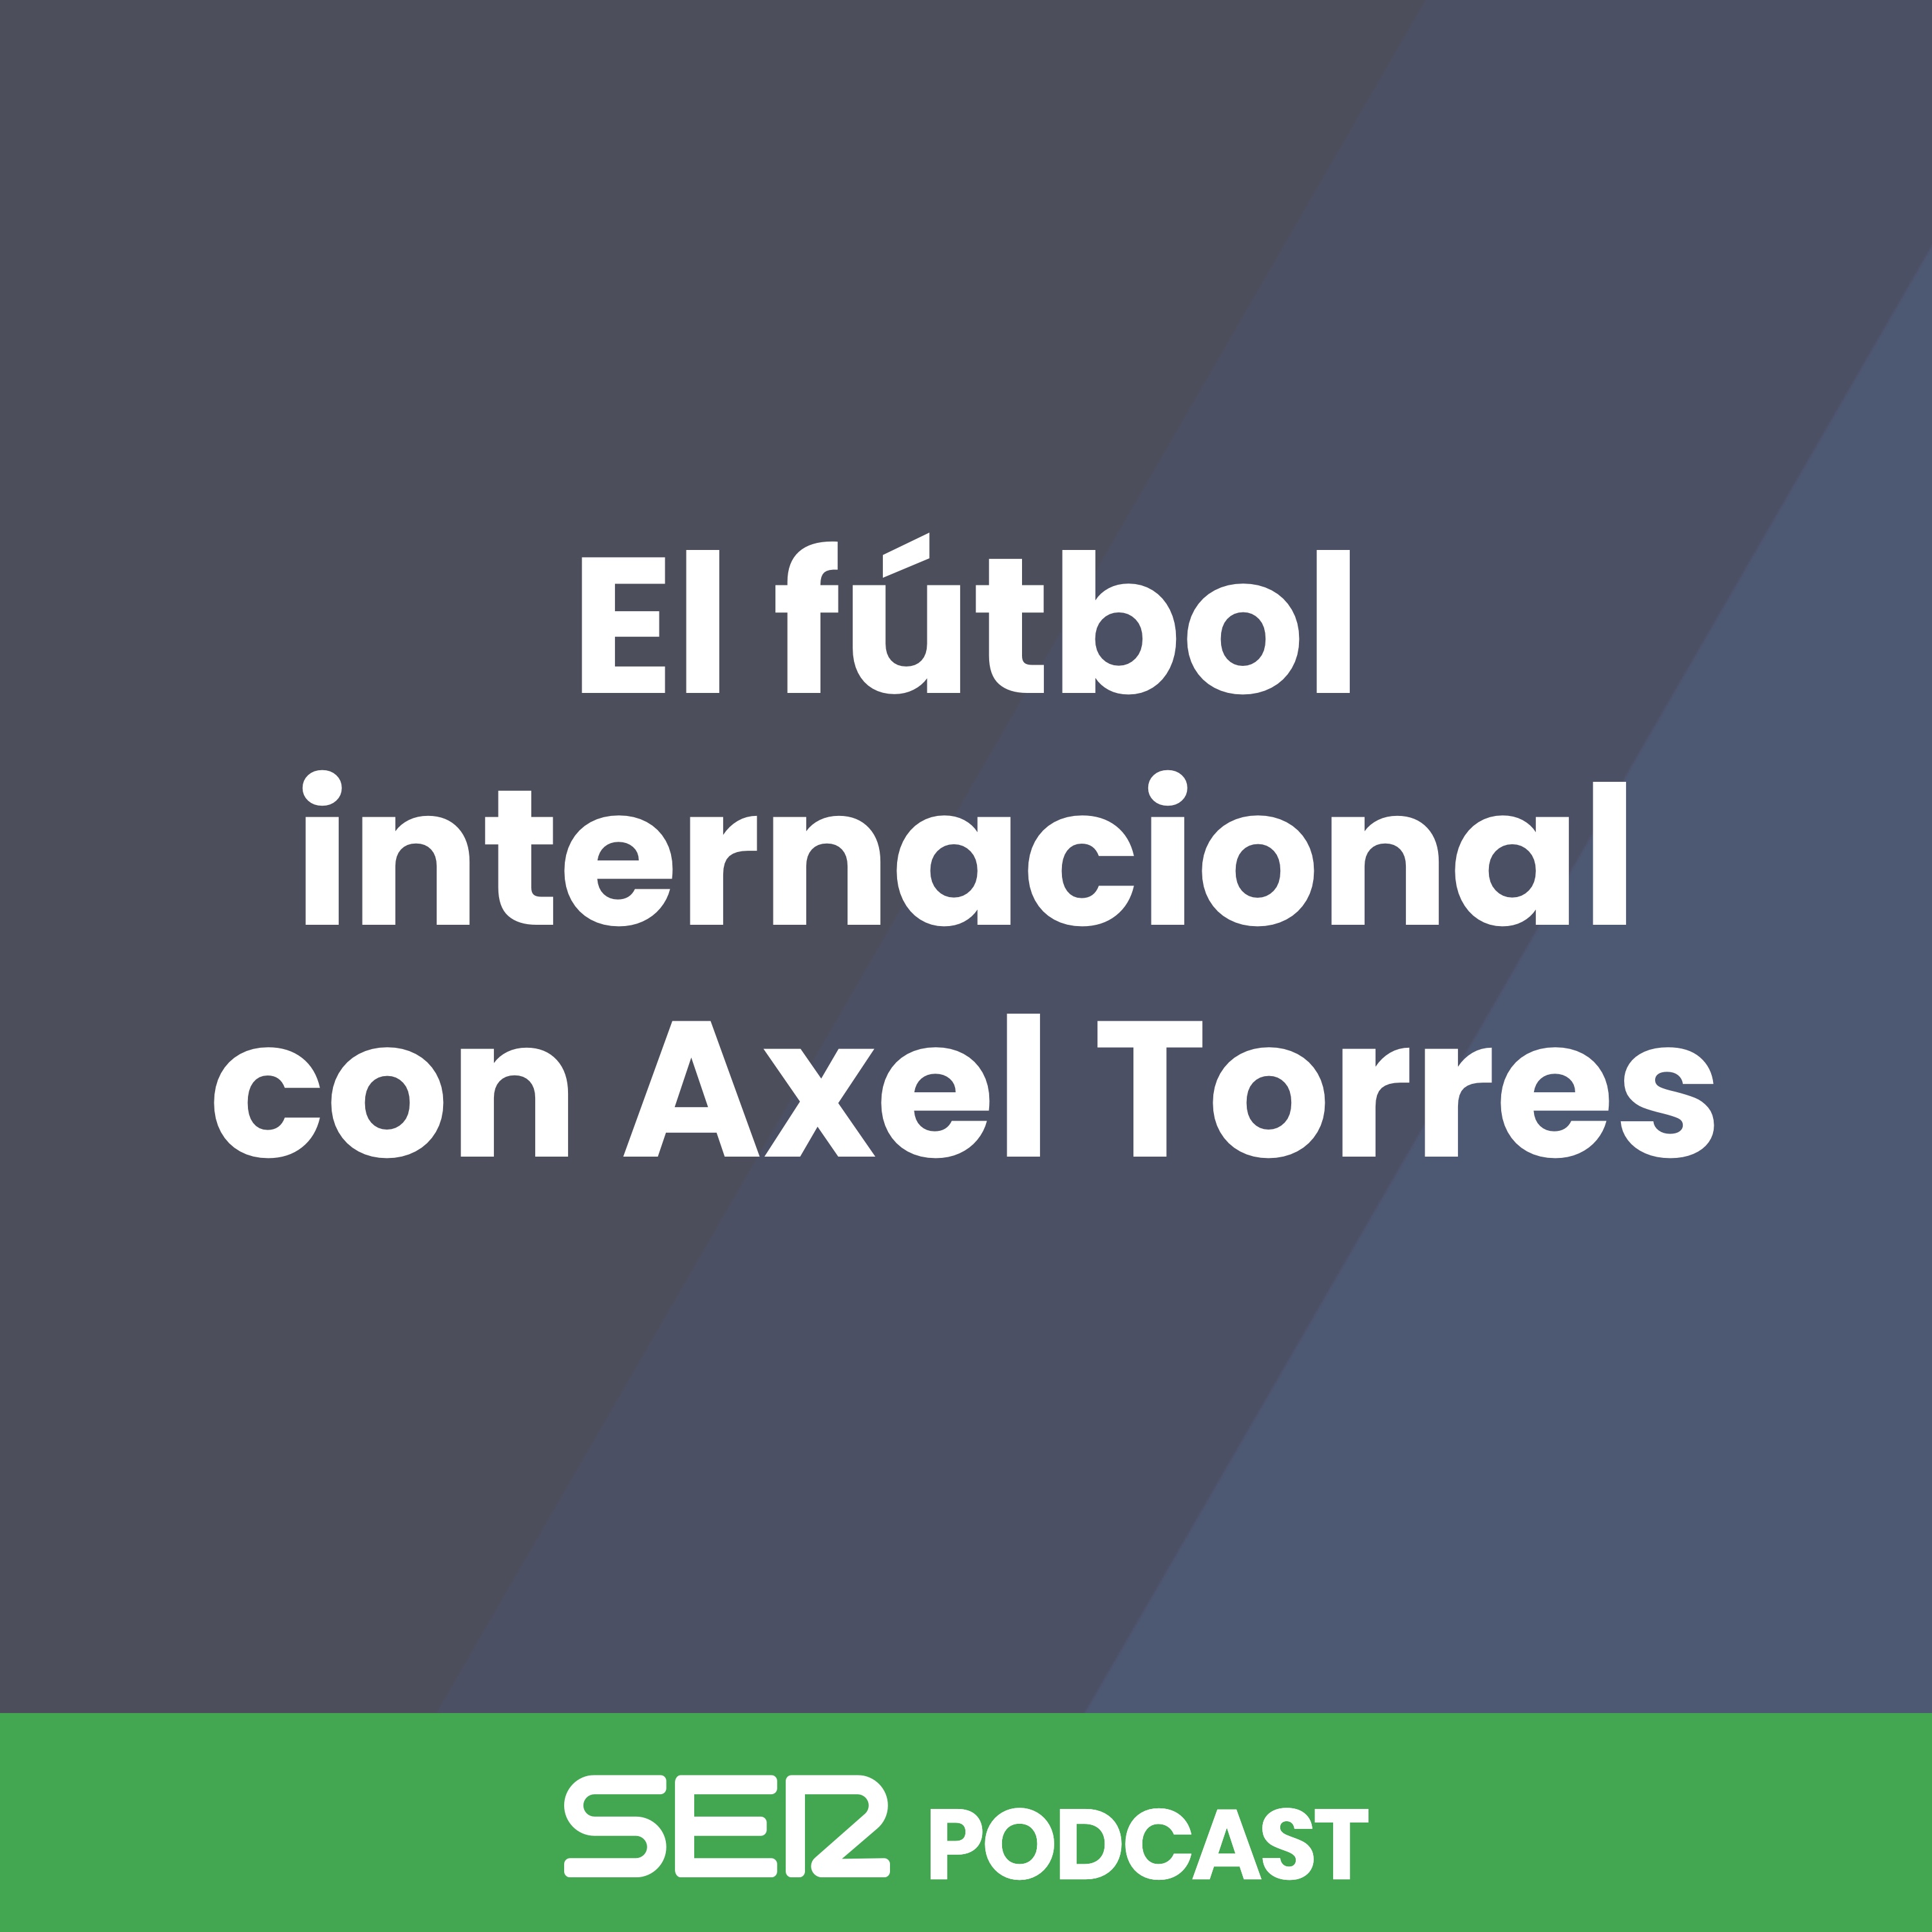 El fútbol internacional con Axel Torres